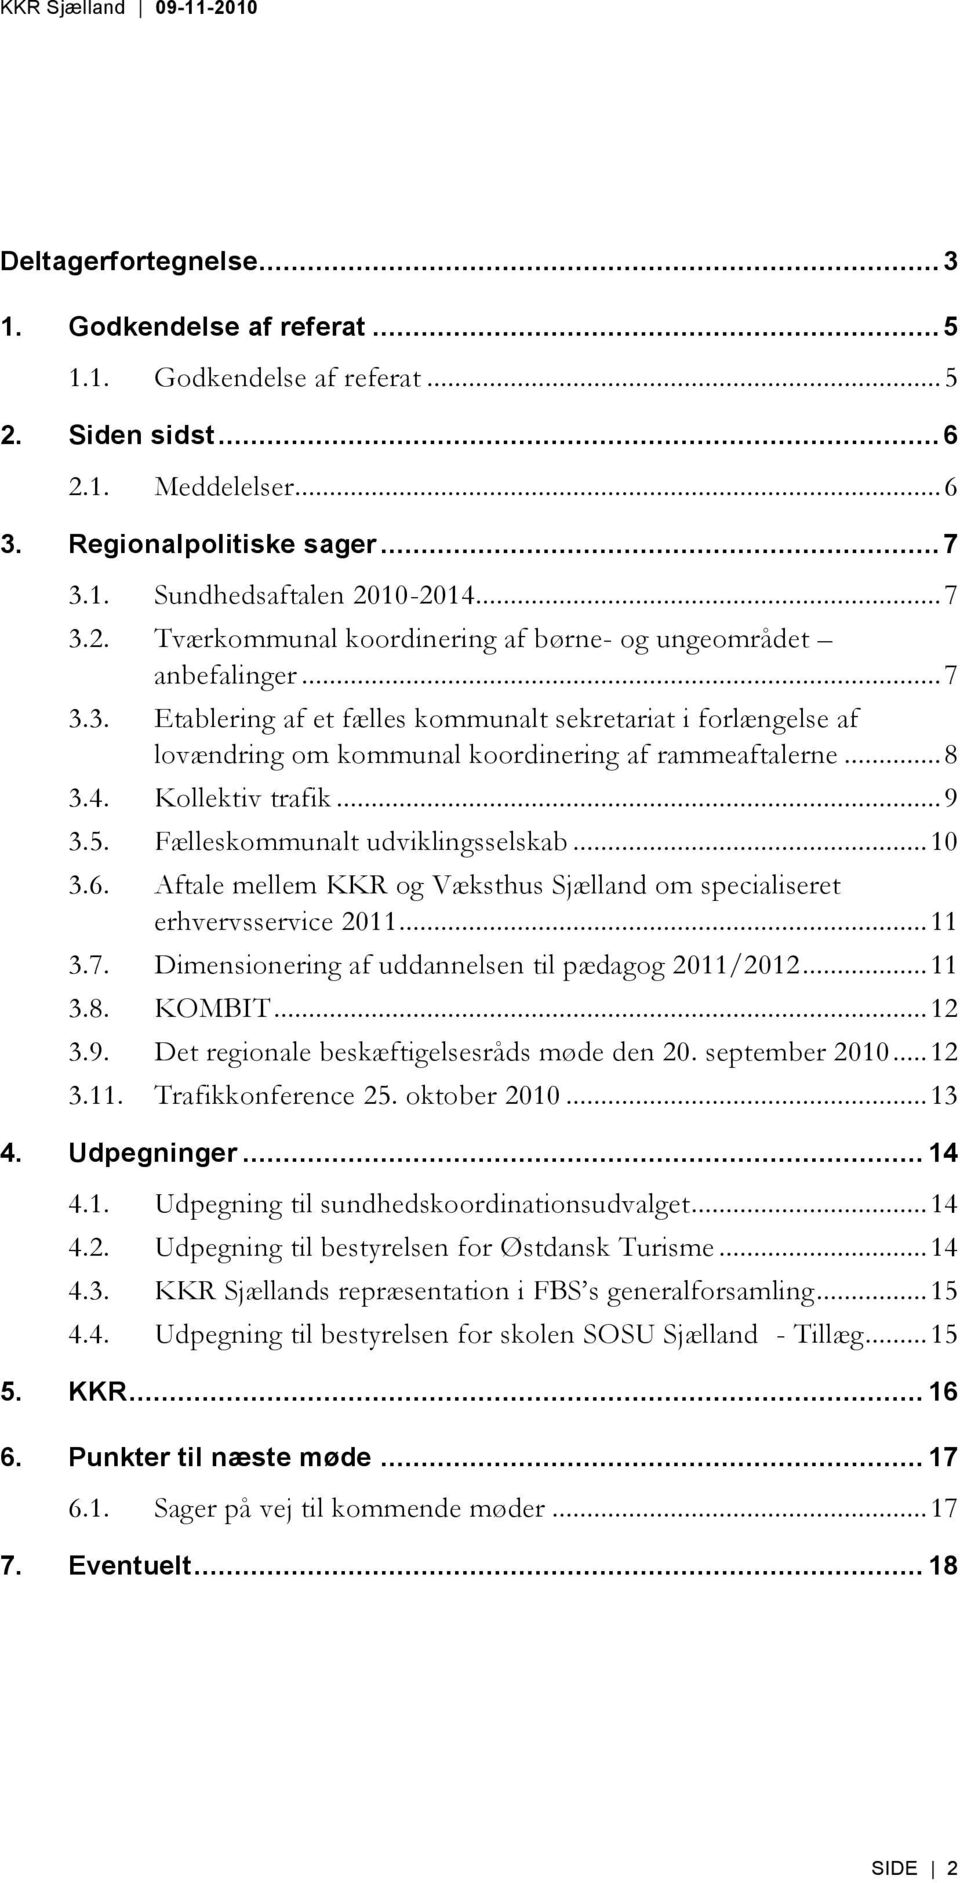 .. 10 3.6. Aftale mellem KKR og Væksthus Sjælland om specialiseret erhvervsservice 2011... 11 3.7. Dimensionering af uddannelsen til pædagog 2011/2012... 11 3.8. KOMBIT... 12 3.9.